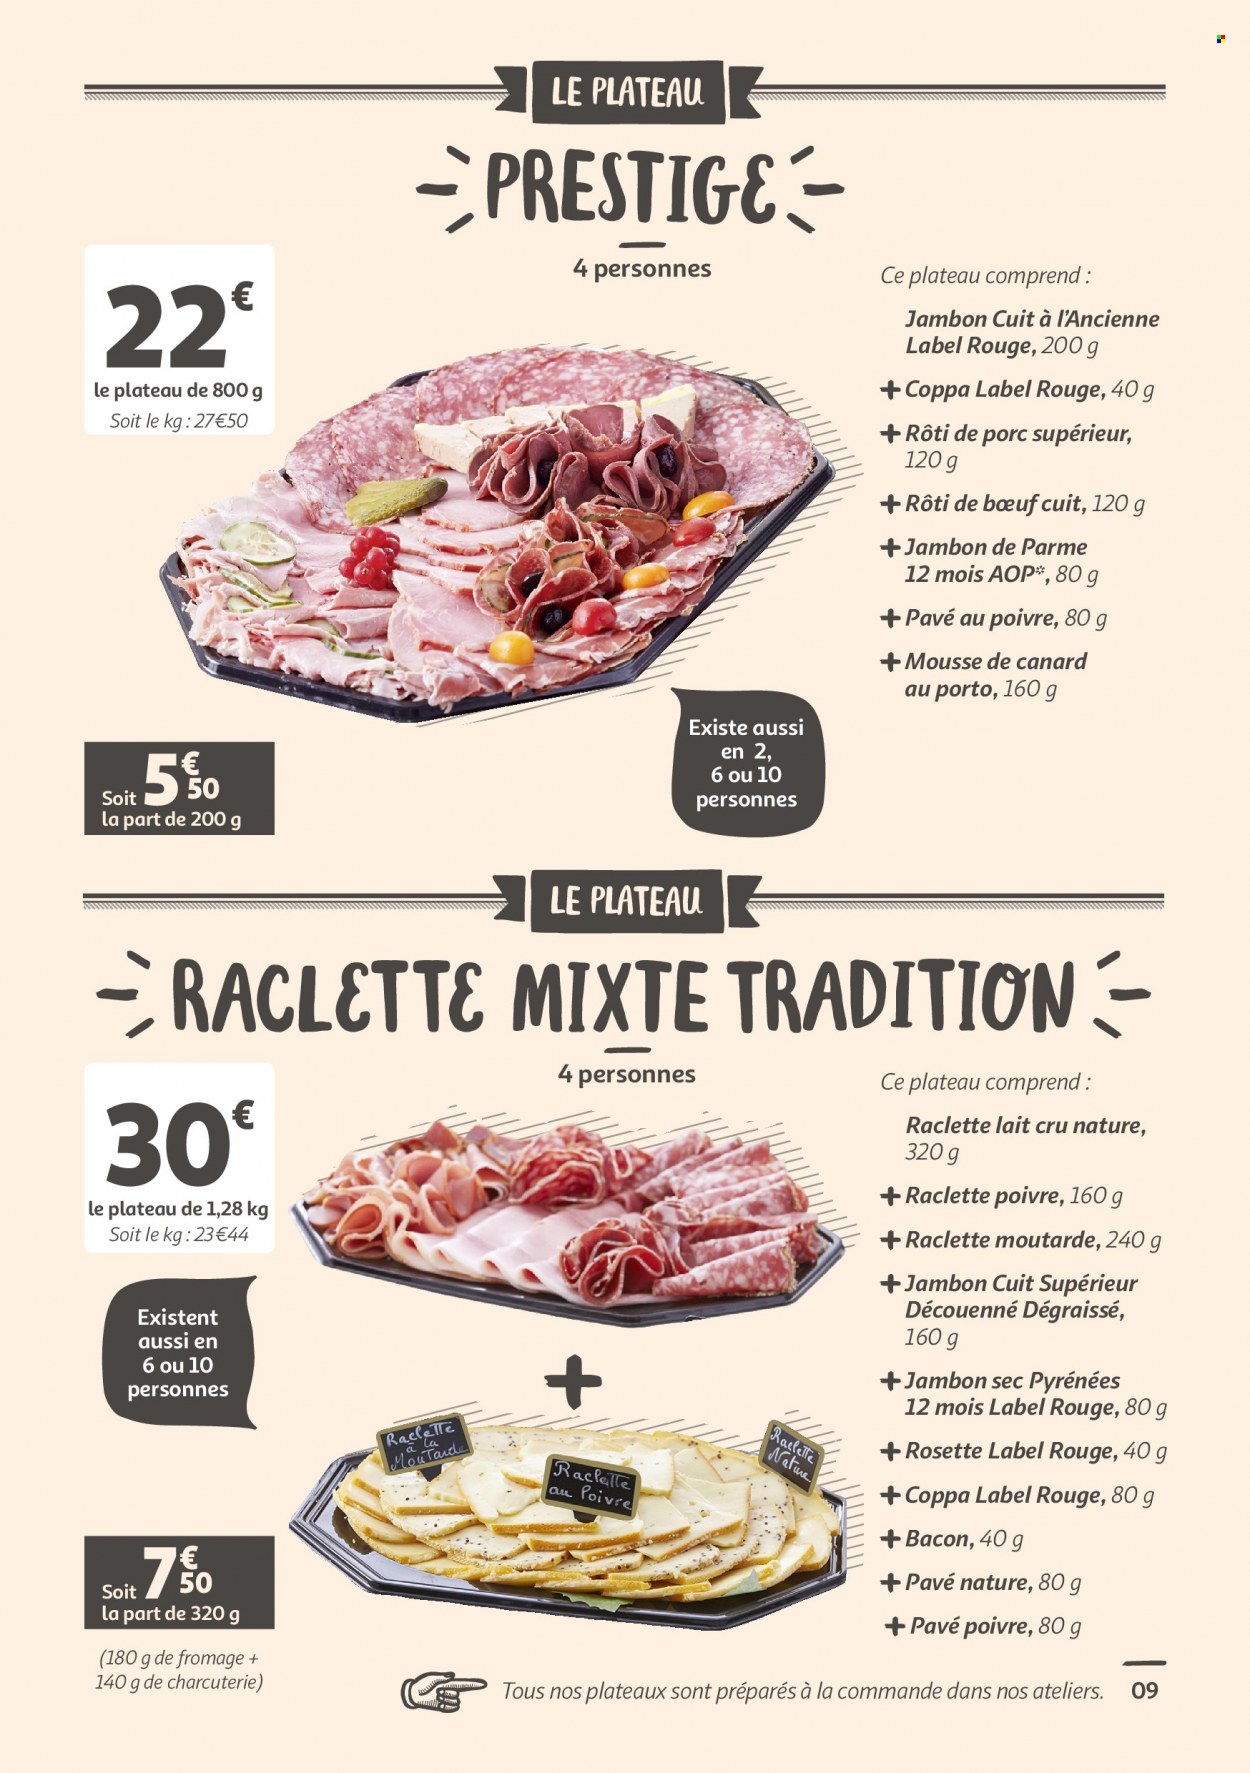 thumbnail - Catalogue Auchan - 21/04/2022 - 31/05/2022 - Produits soldés - rôti de porc, viande de porc, pavé nature, rôti de bœuf, jambon, coppa, jambon sec, rosette, jambon de parme, bacon, mousse de canard, La Raclette, lait. Page 9.